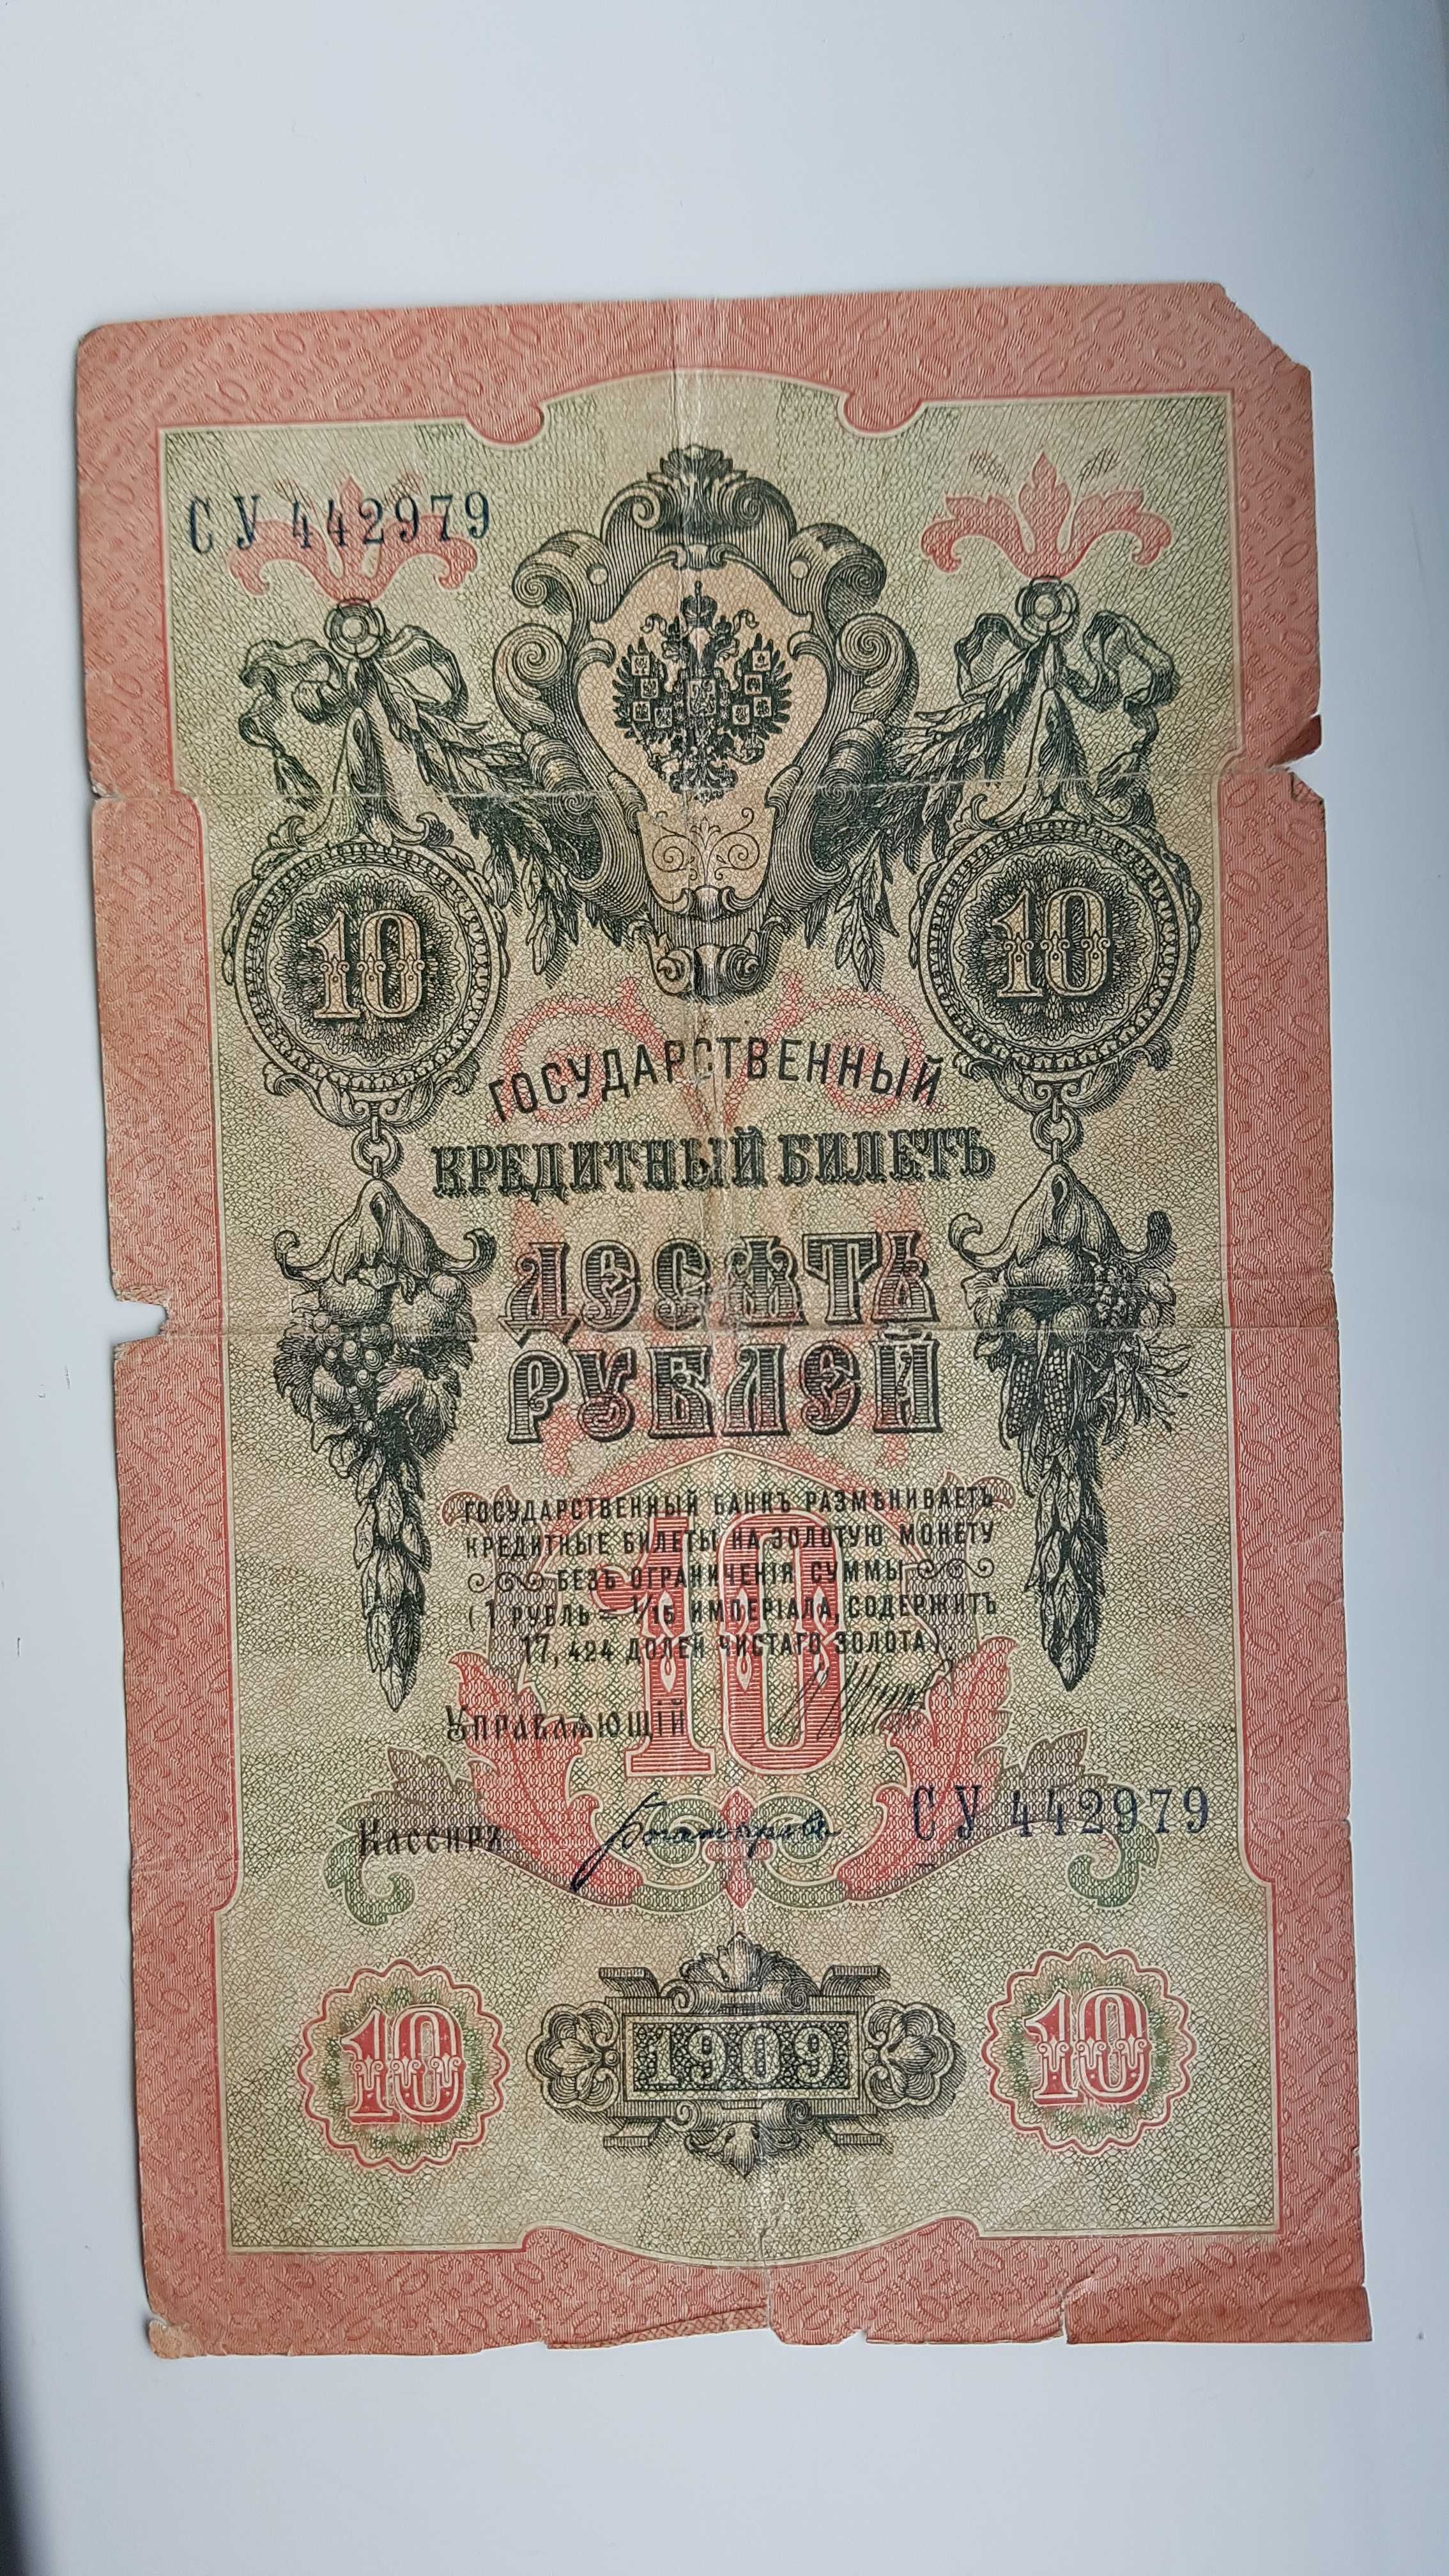 Десять рублей 1909 года